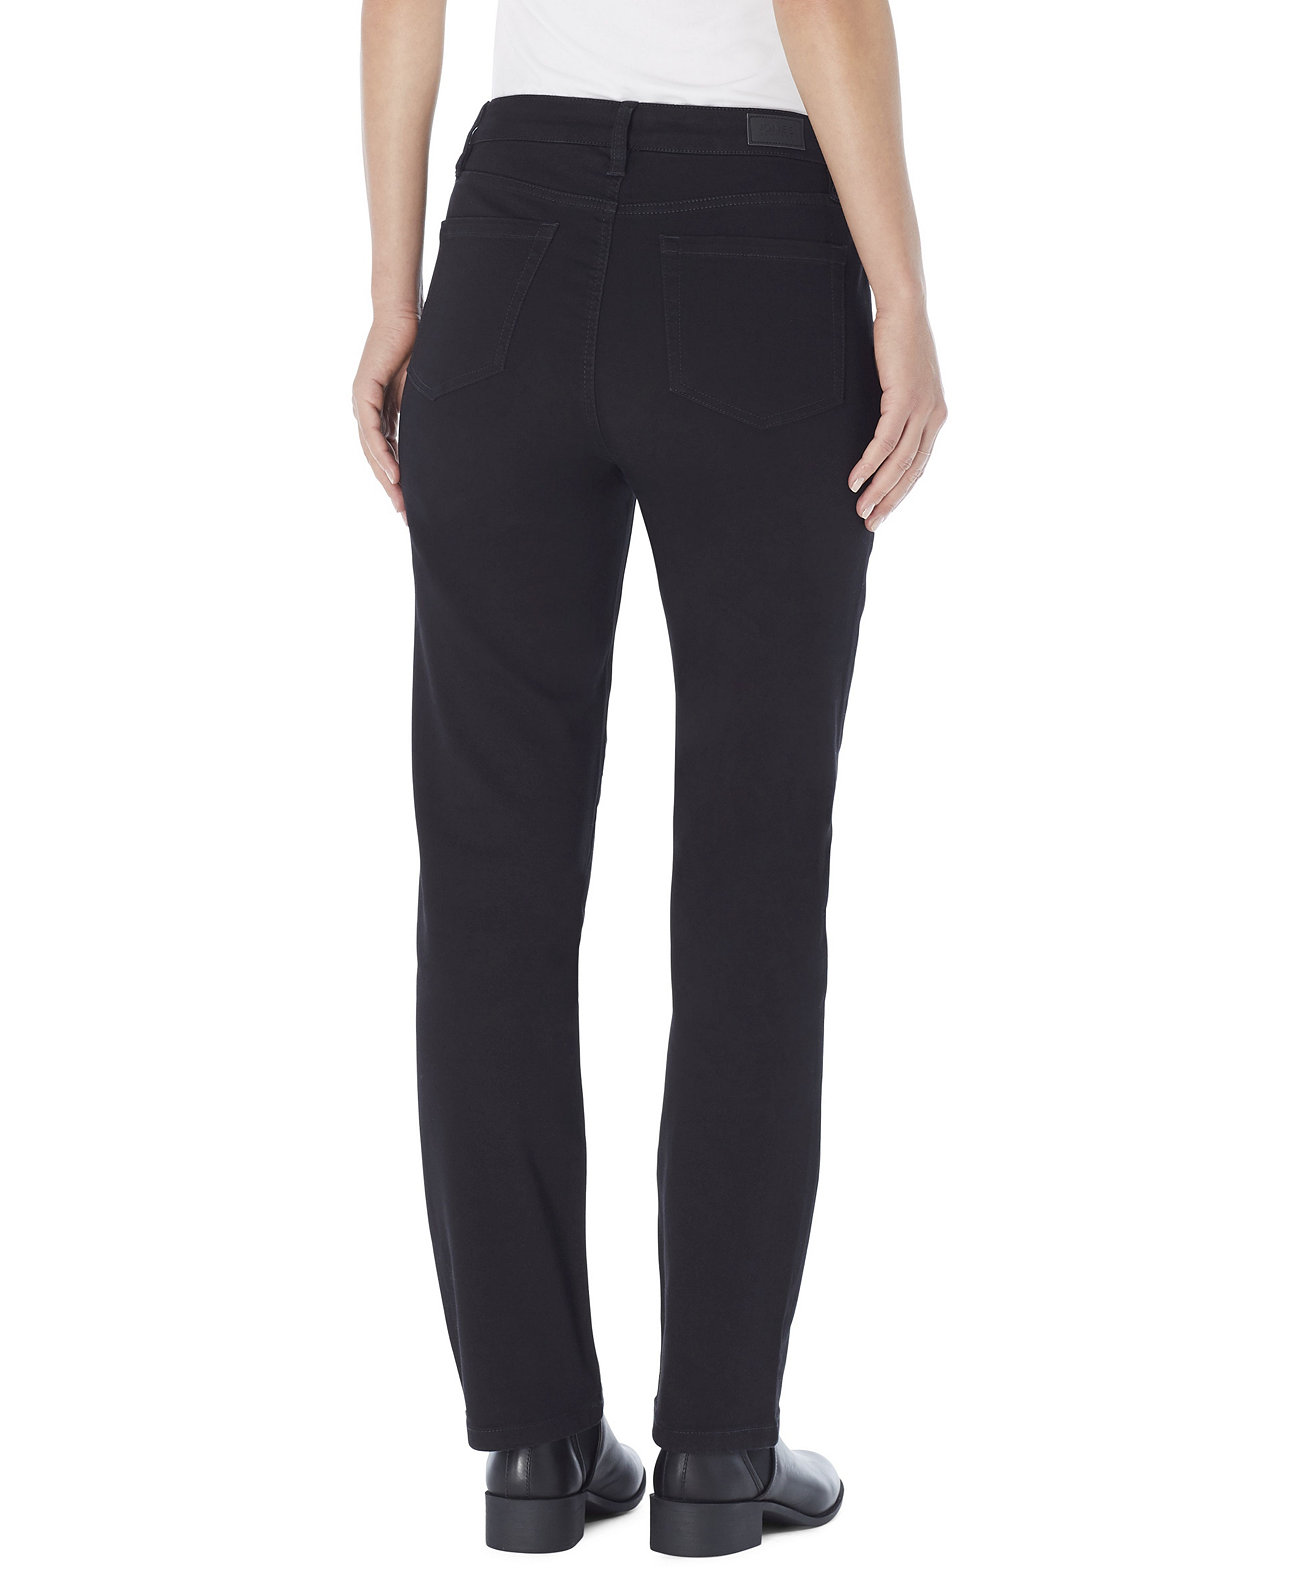 Женские прямые джинсовые джинсы Lexington со средней посадкой, стандартные и миниатюрные Jones New York